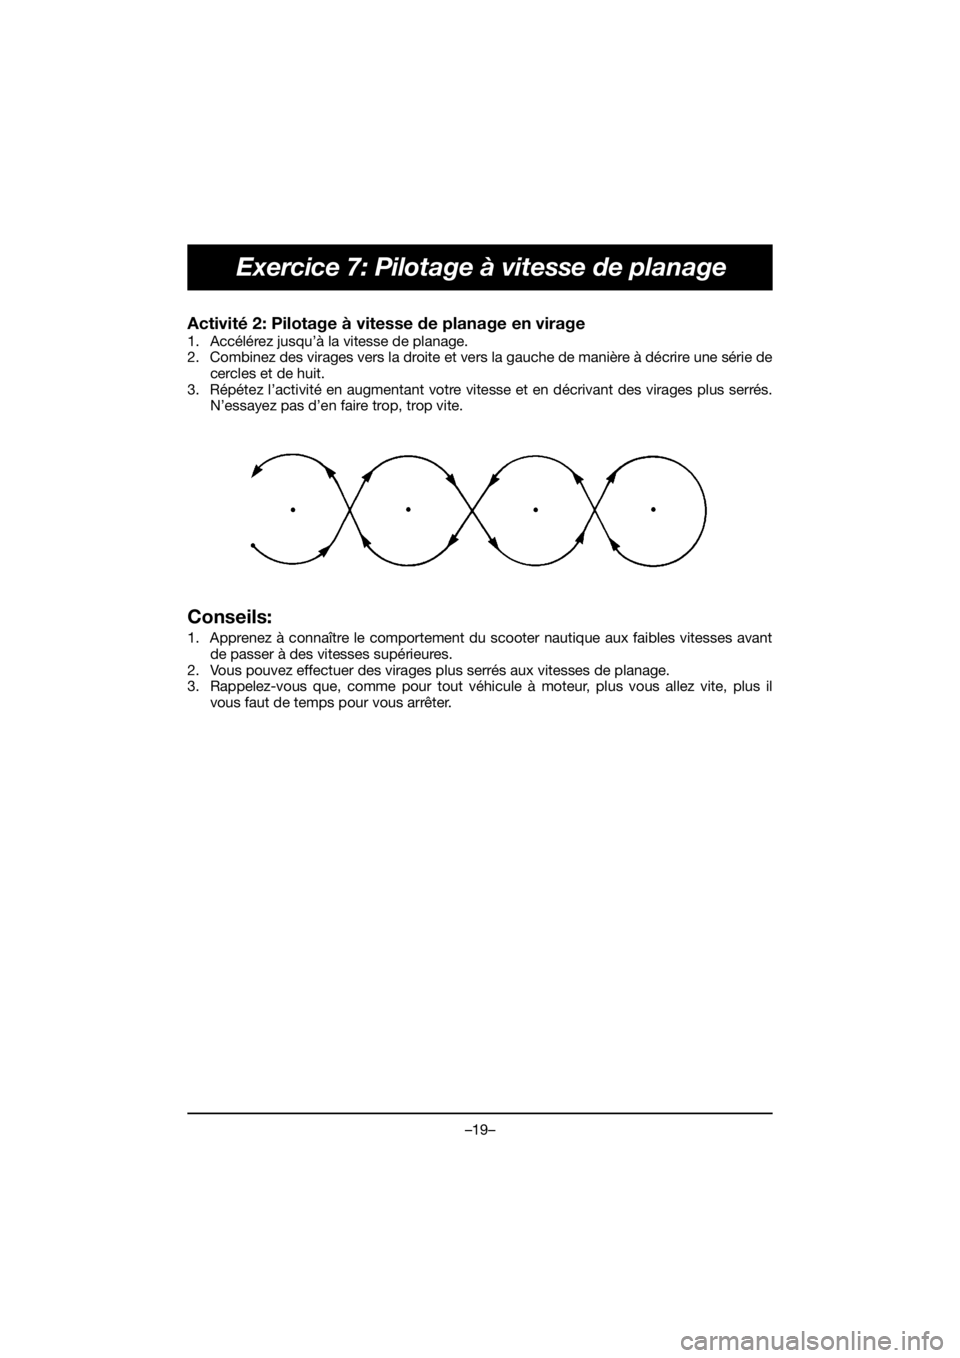 YAMAHA EX 2020  Manual de utilização (in Portuguese) –19–
Exercice 7: Pilotage à vitesse de planage
Activité 2: Pilotage à vitesse de planage en virage 
1. Accélérez jusqu’à la vitesse de planage. 
2. Combinez des virages vers la droite et v